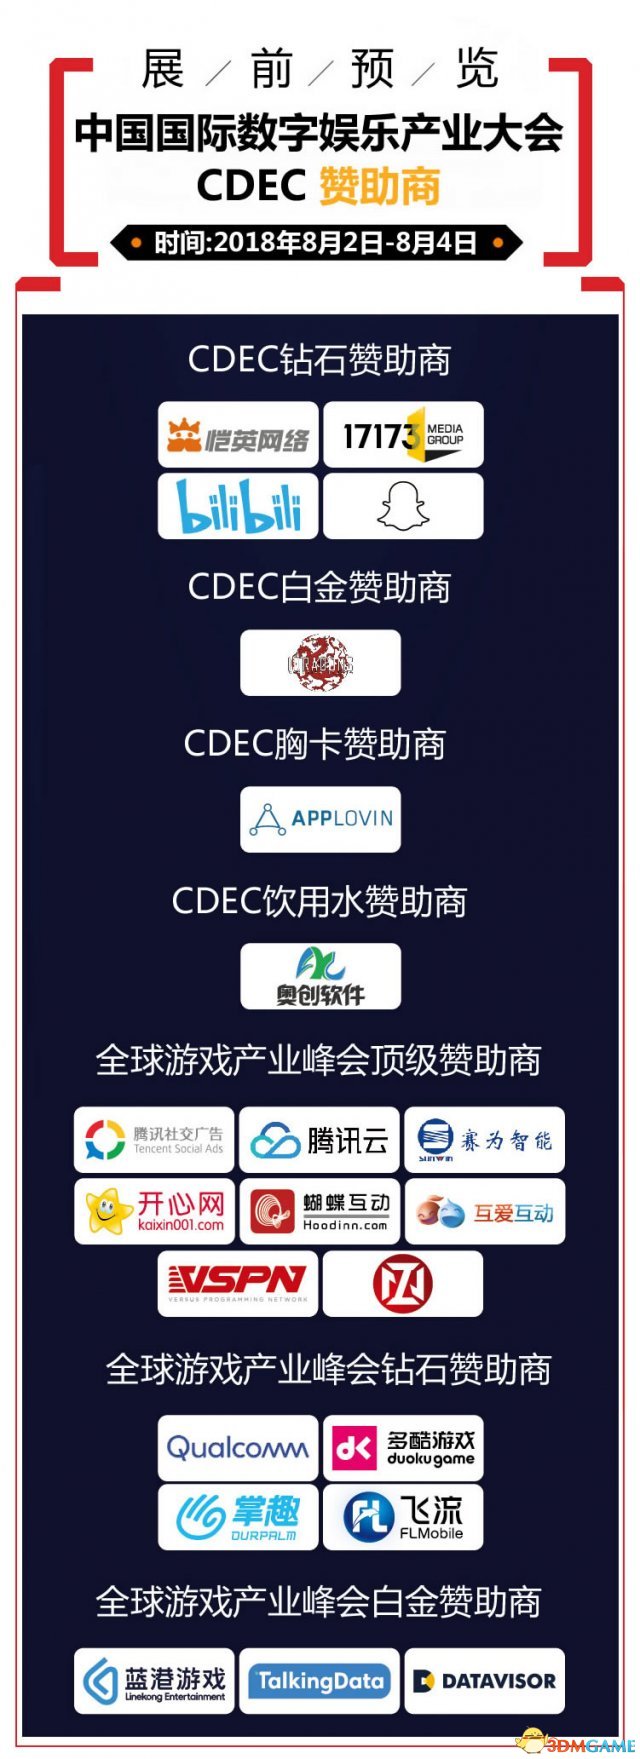 2018年第106届ChinaJoy展前预览(CDEC篇)正式支布!